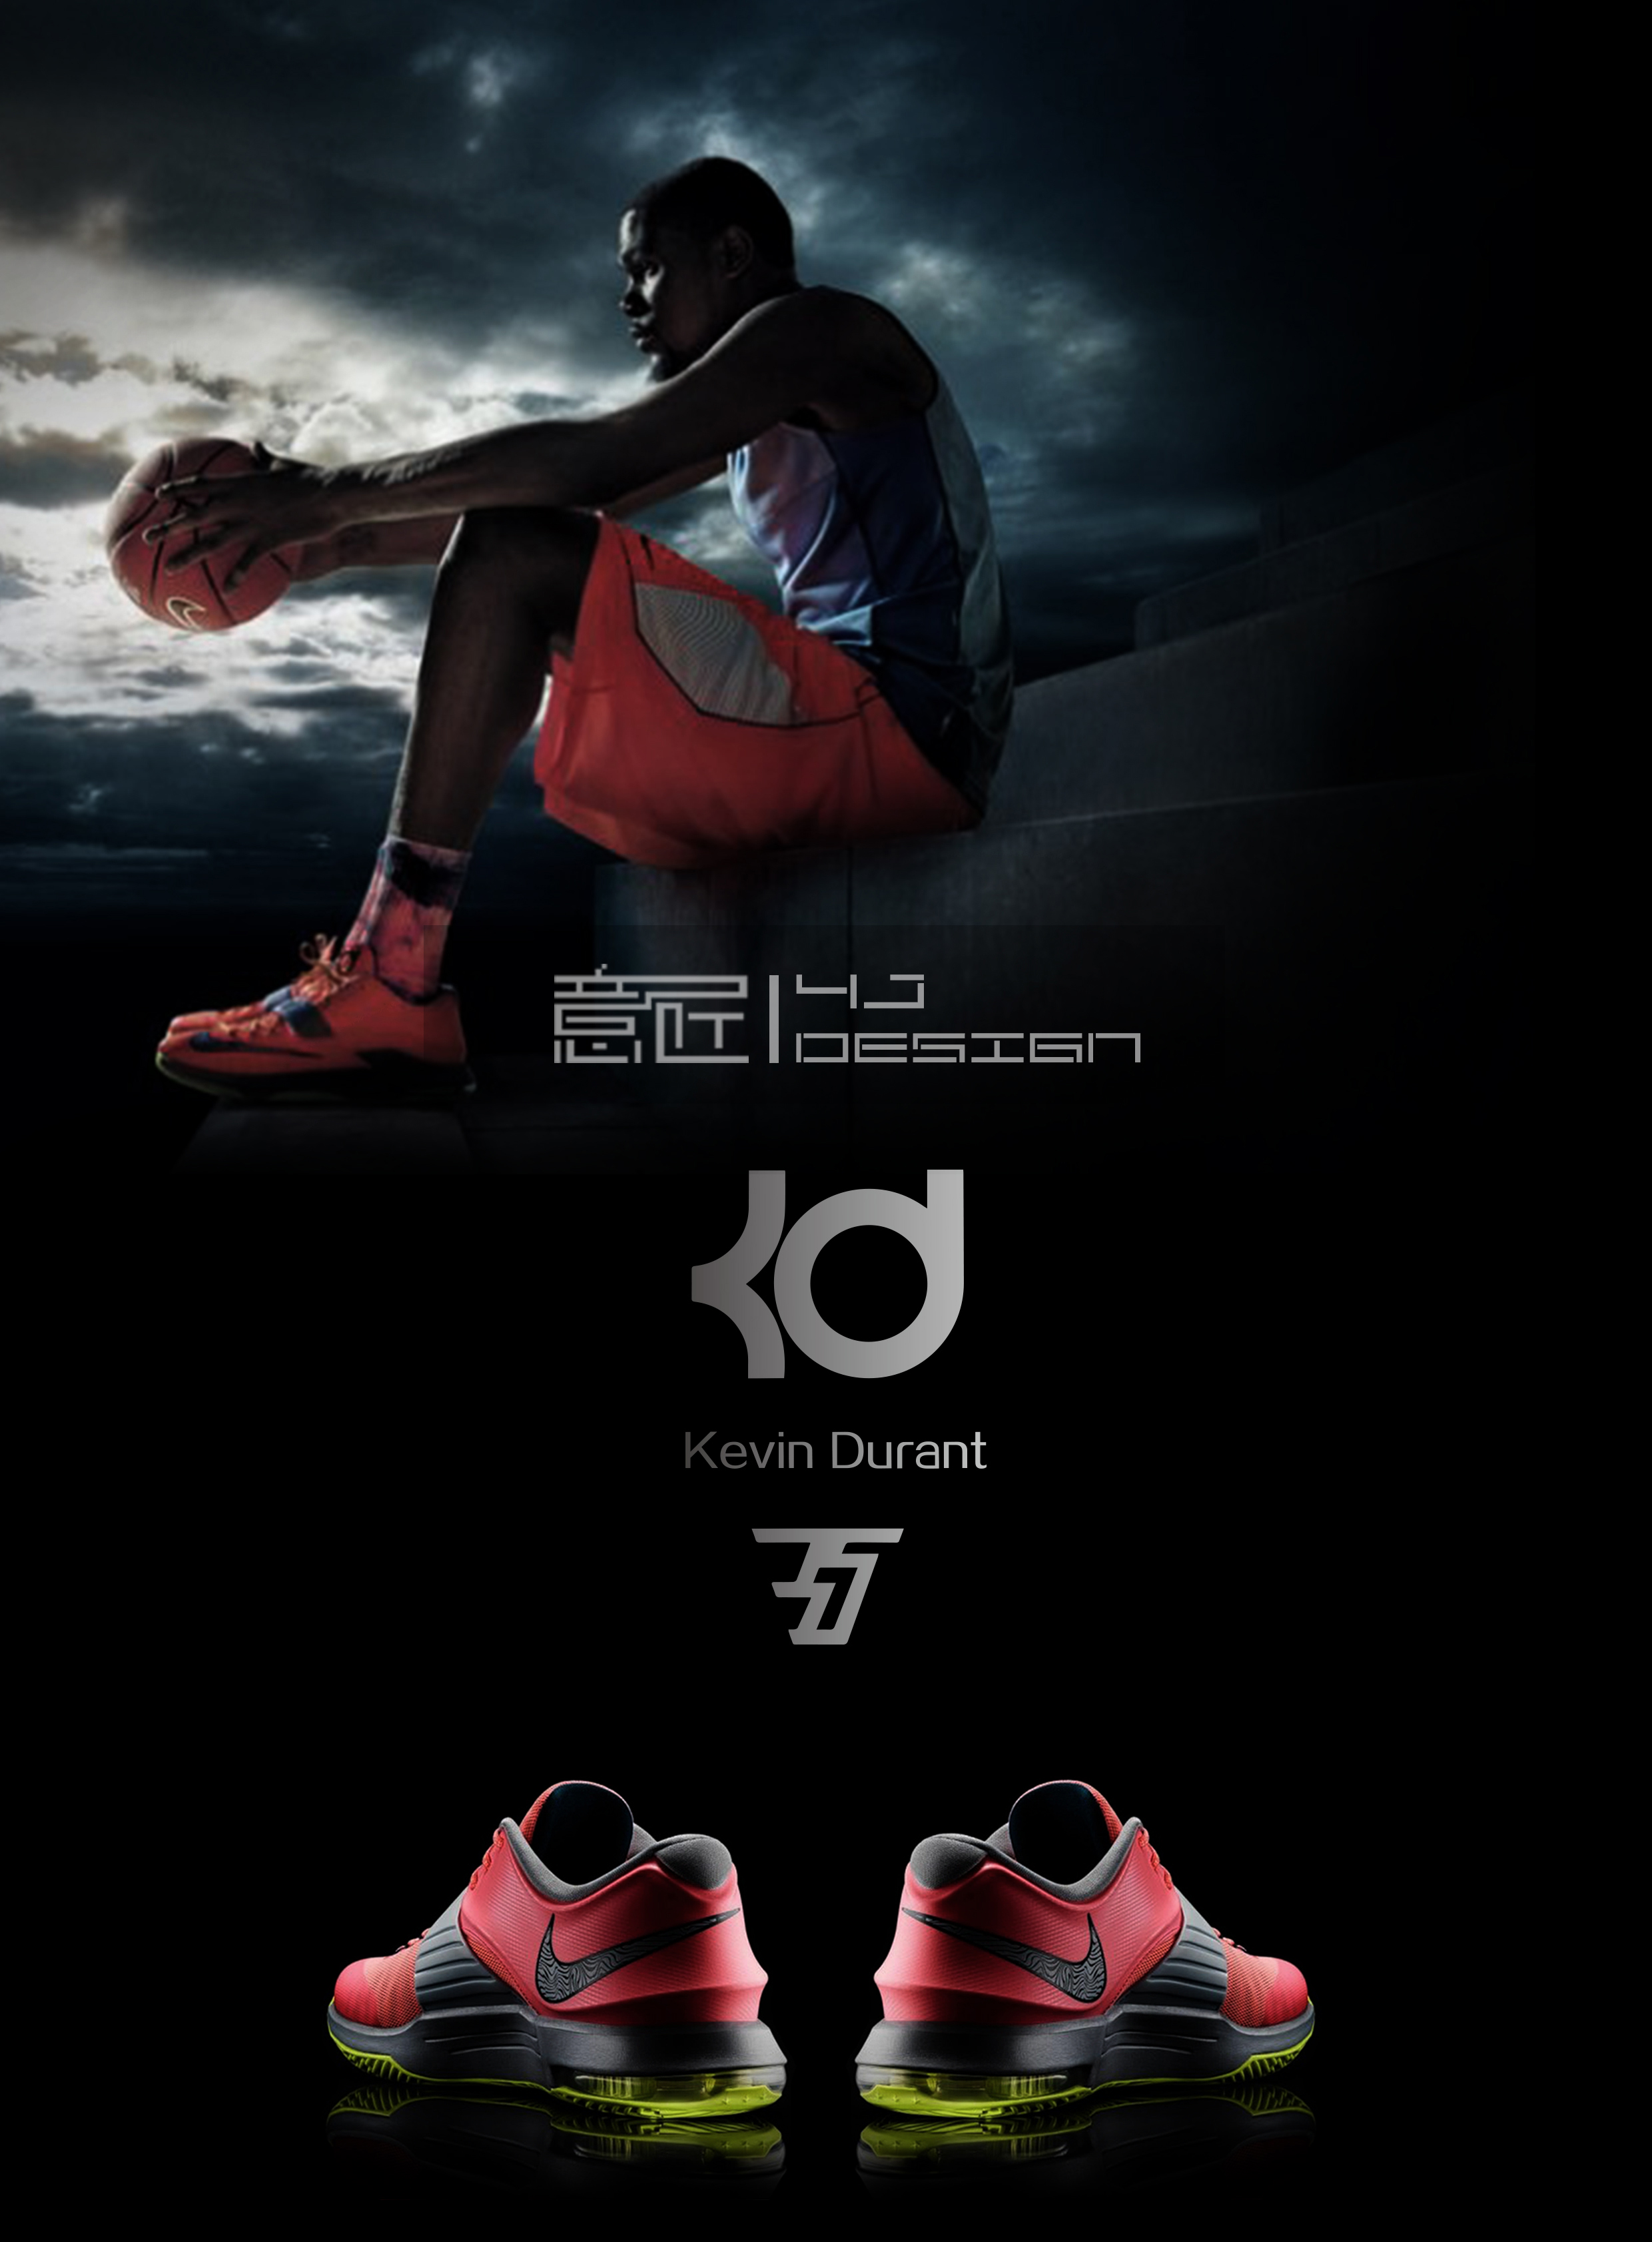 耐克篮球鞋海报图片